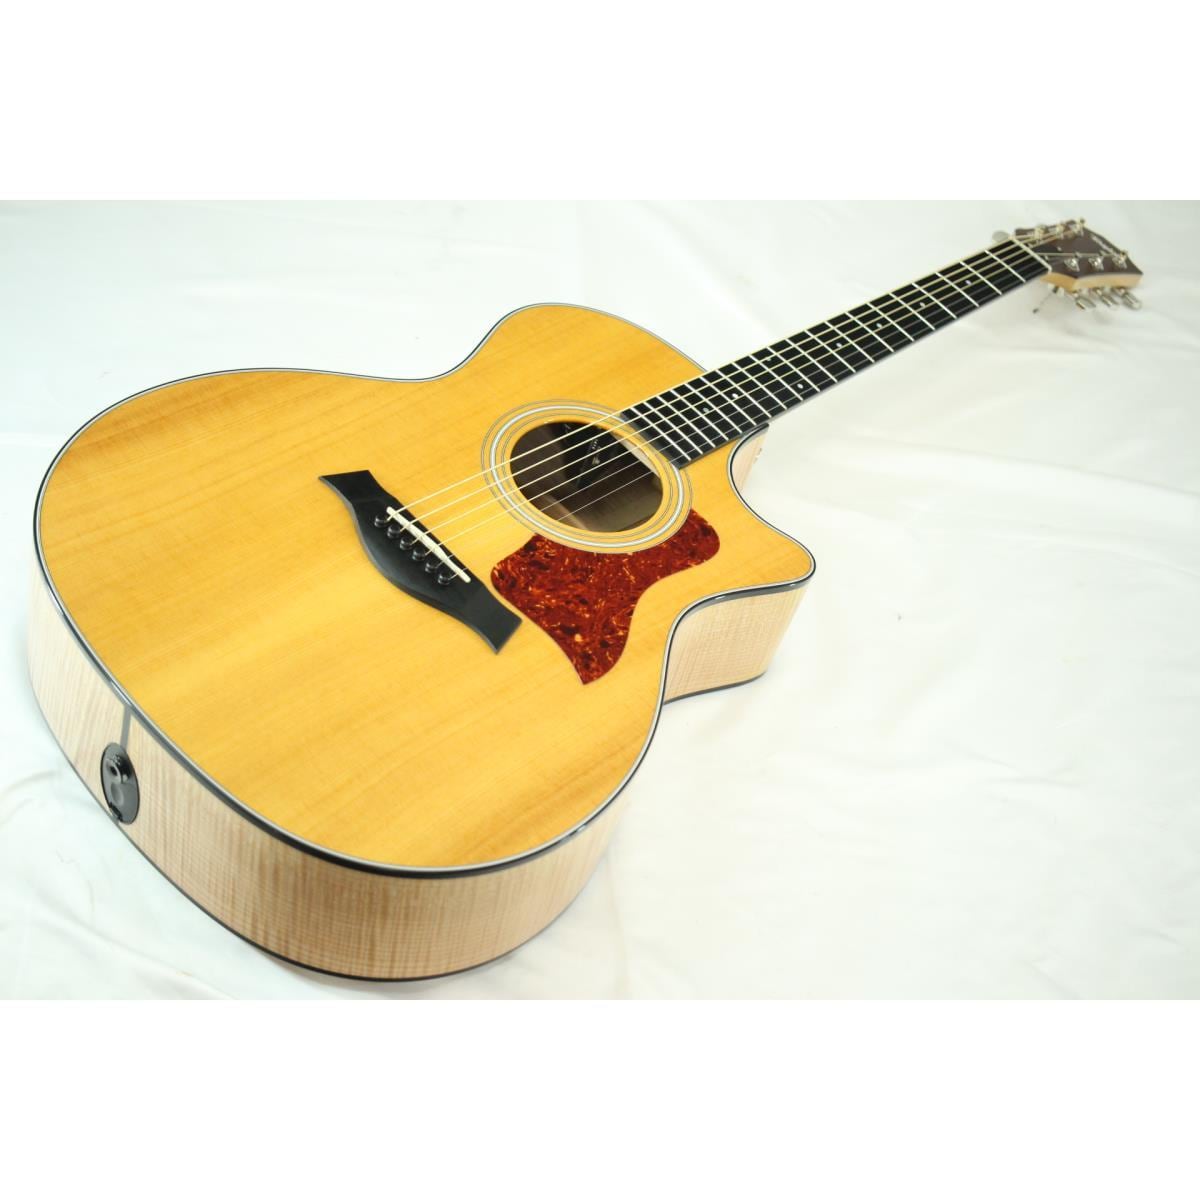 Taylor 314C アコースティック ギター - アコースティックギター